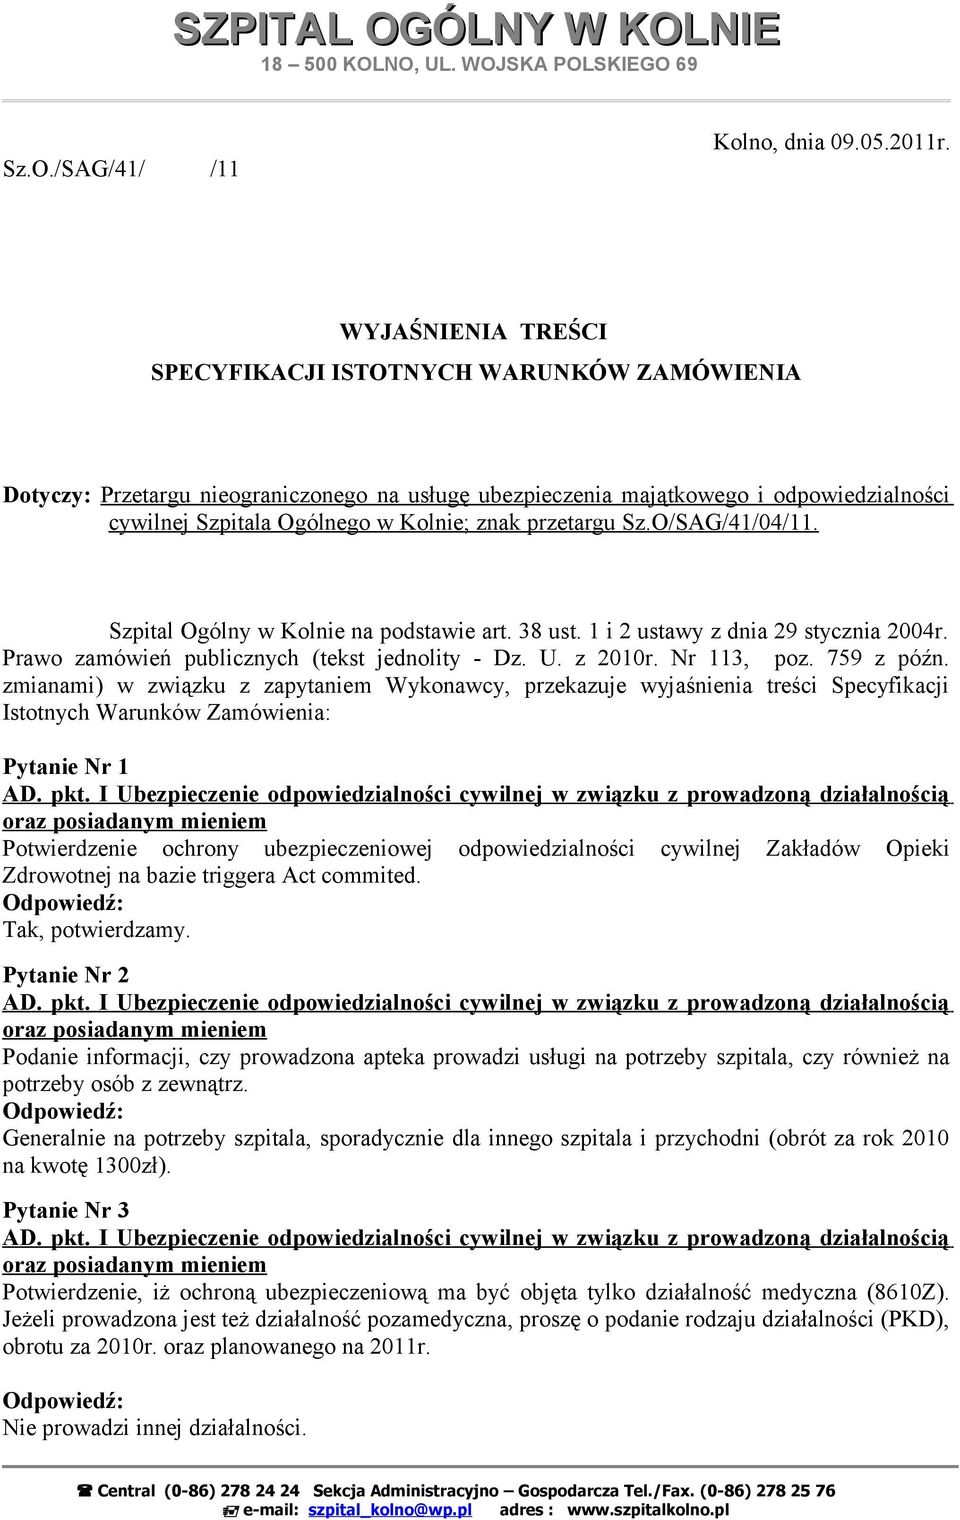 przetargu Sz.O/SAG/41/04/11. Szpital Ogólny w Kolnie na podstawie art. 38 ust. 1 i 2 ustawy z dnia 29 stycznia 2004r. Prawo zamówień publicznych (tekst jednolity - Dz. U. z 2010r. Nr 113, poz.